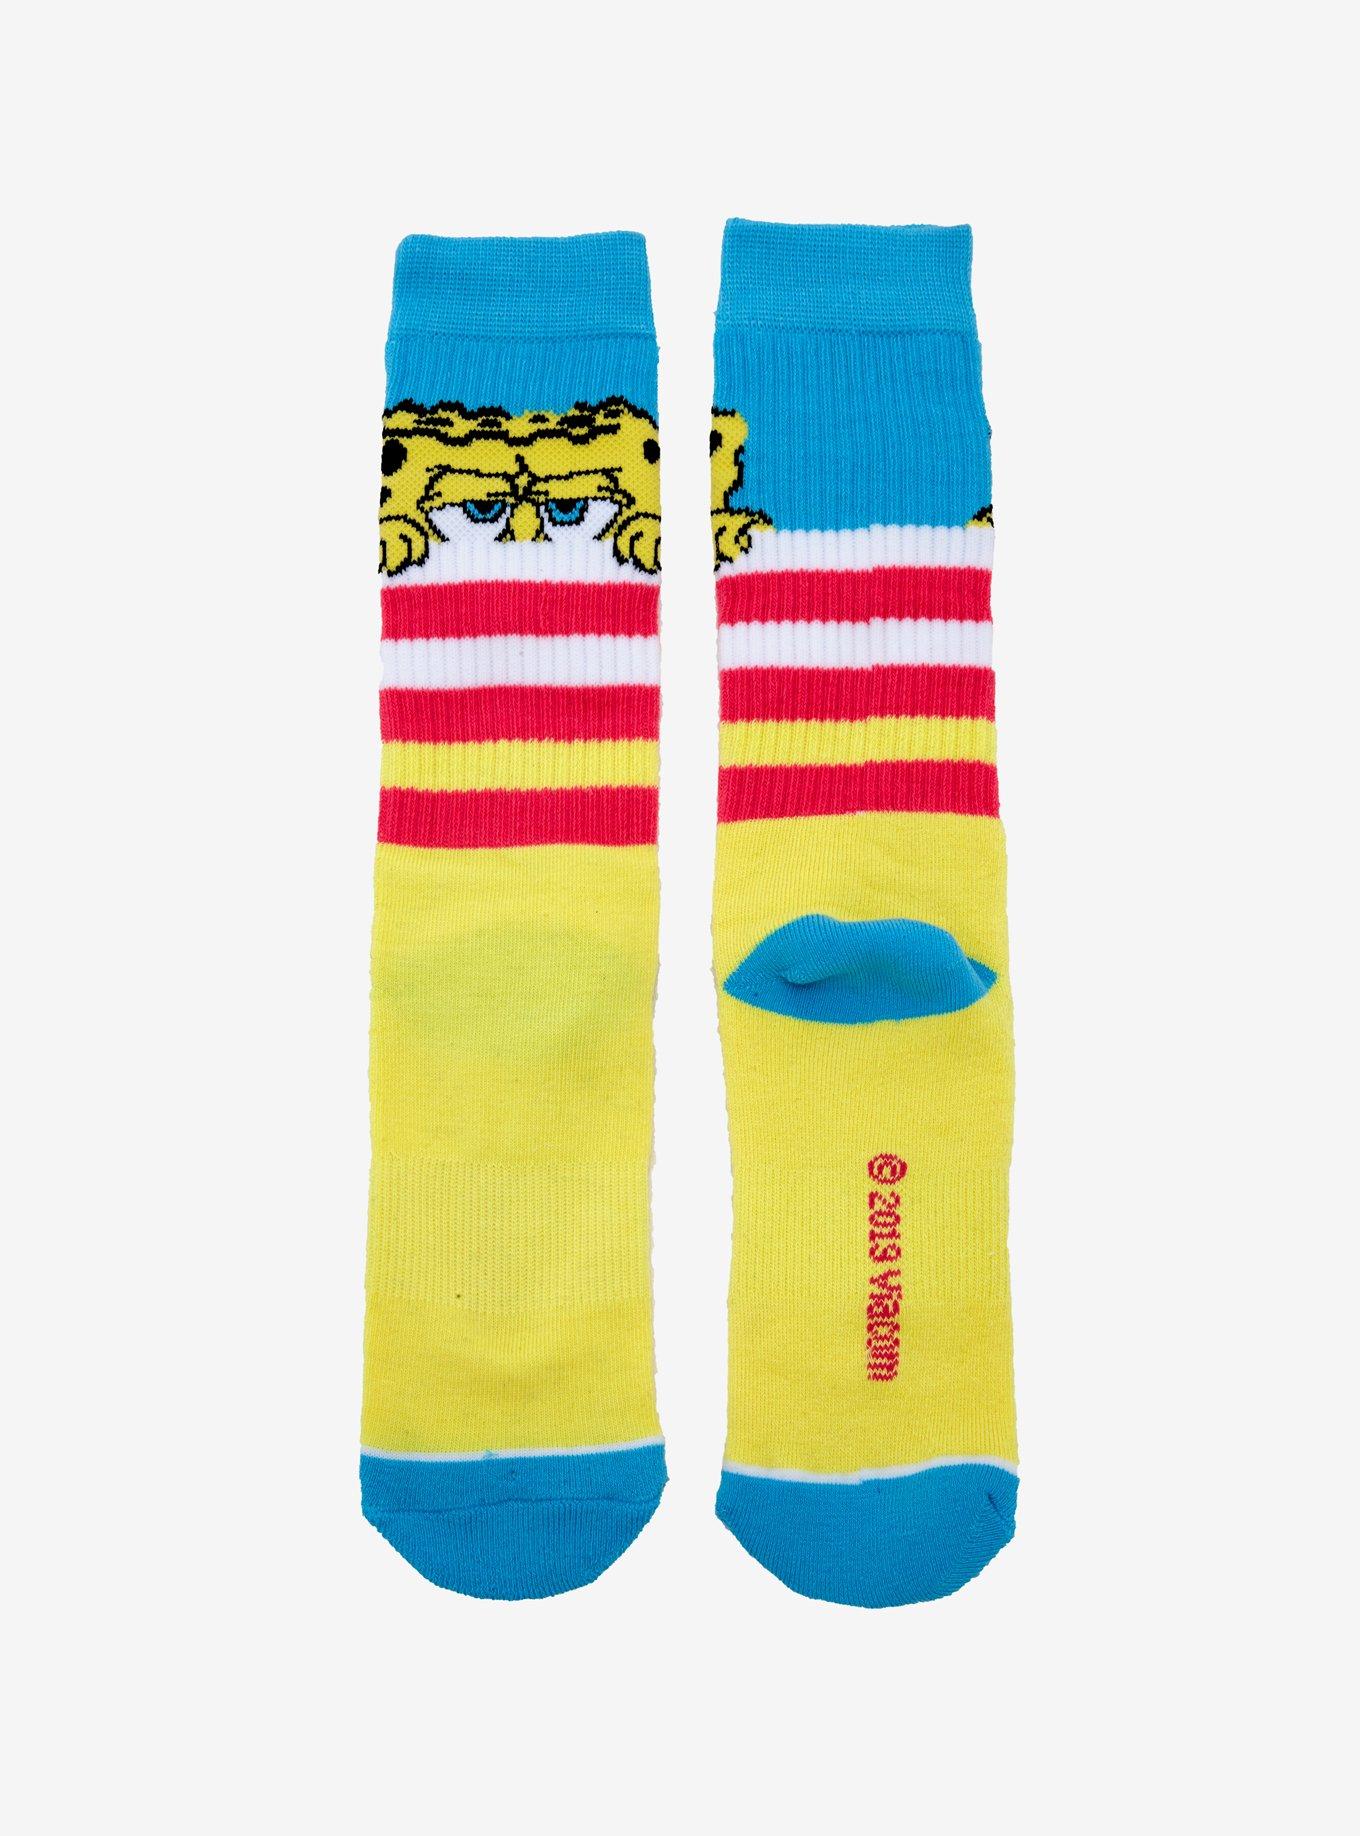 SpongeBob SquarePants Striped Crew Socks, , alternate